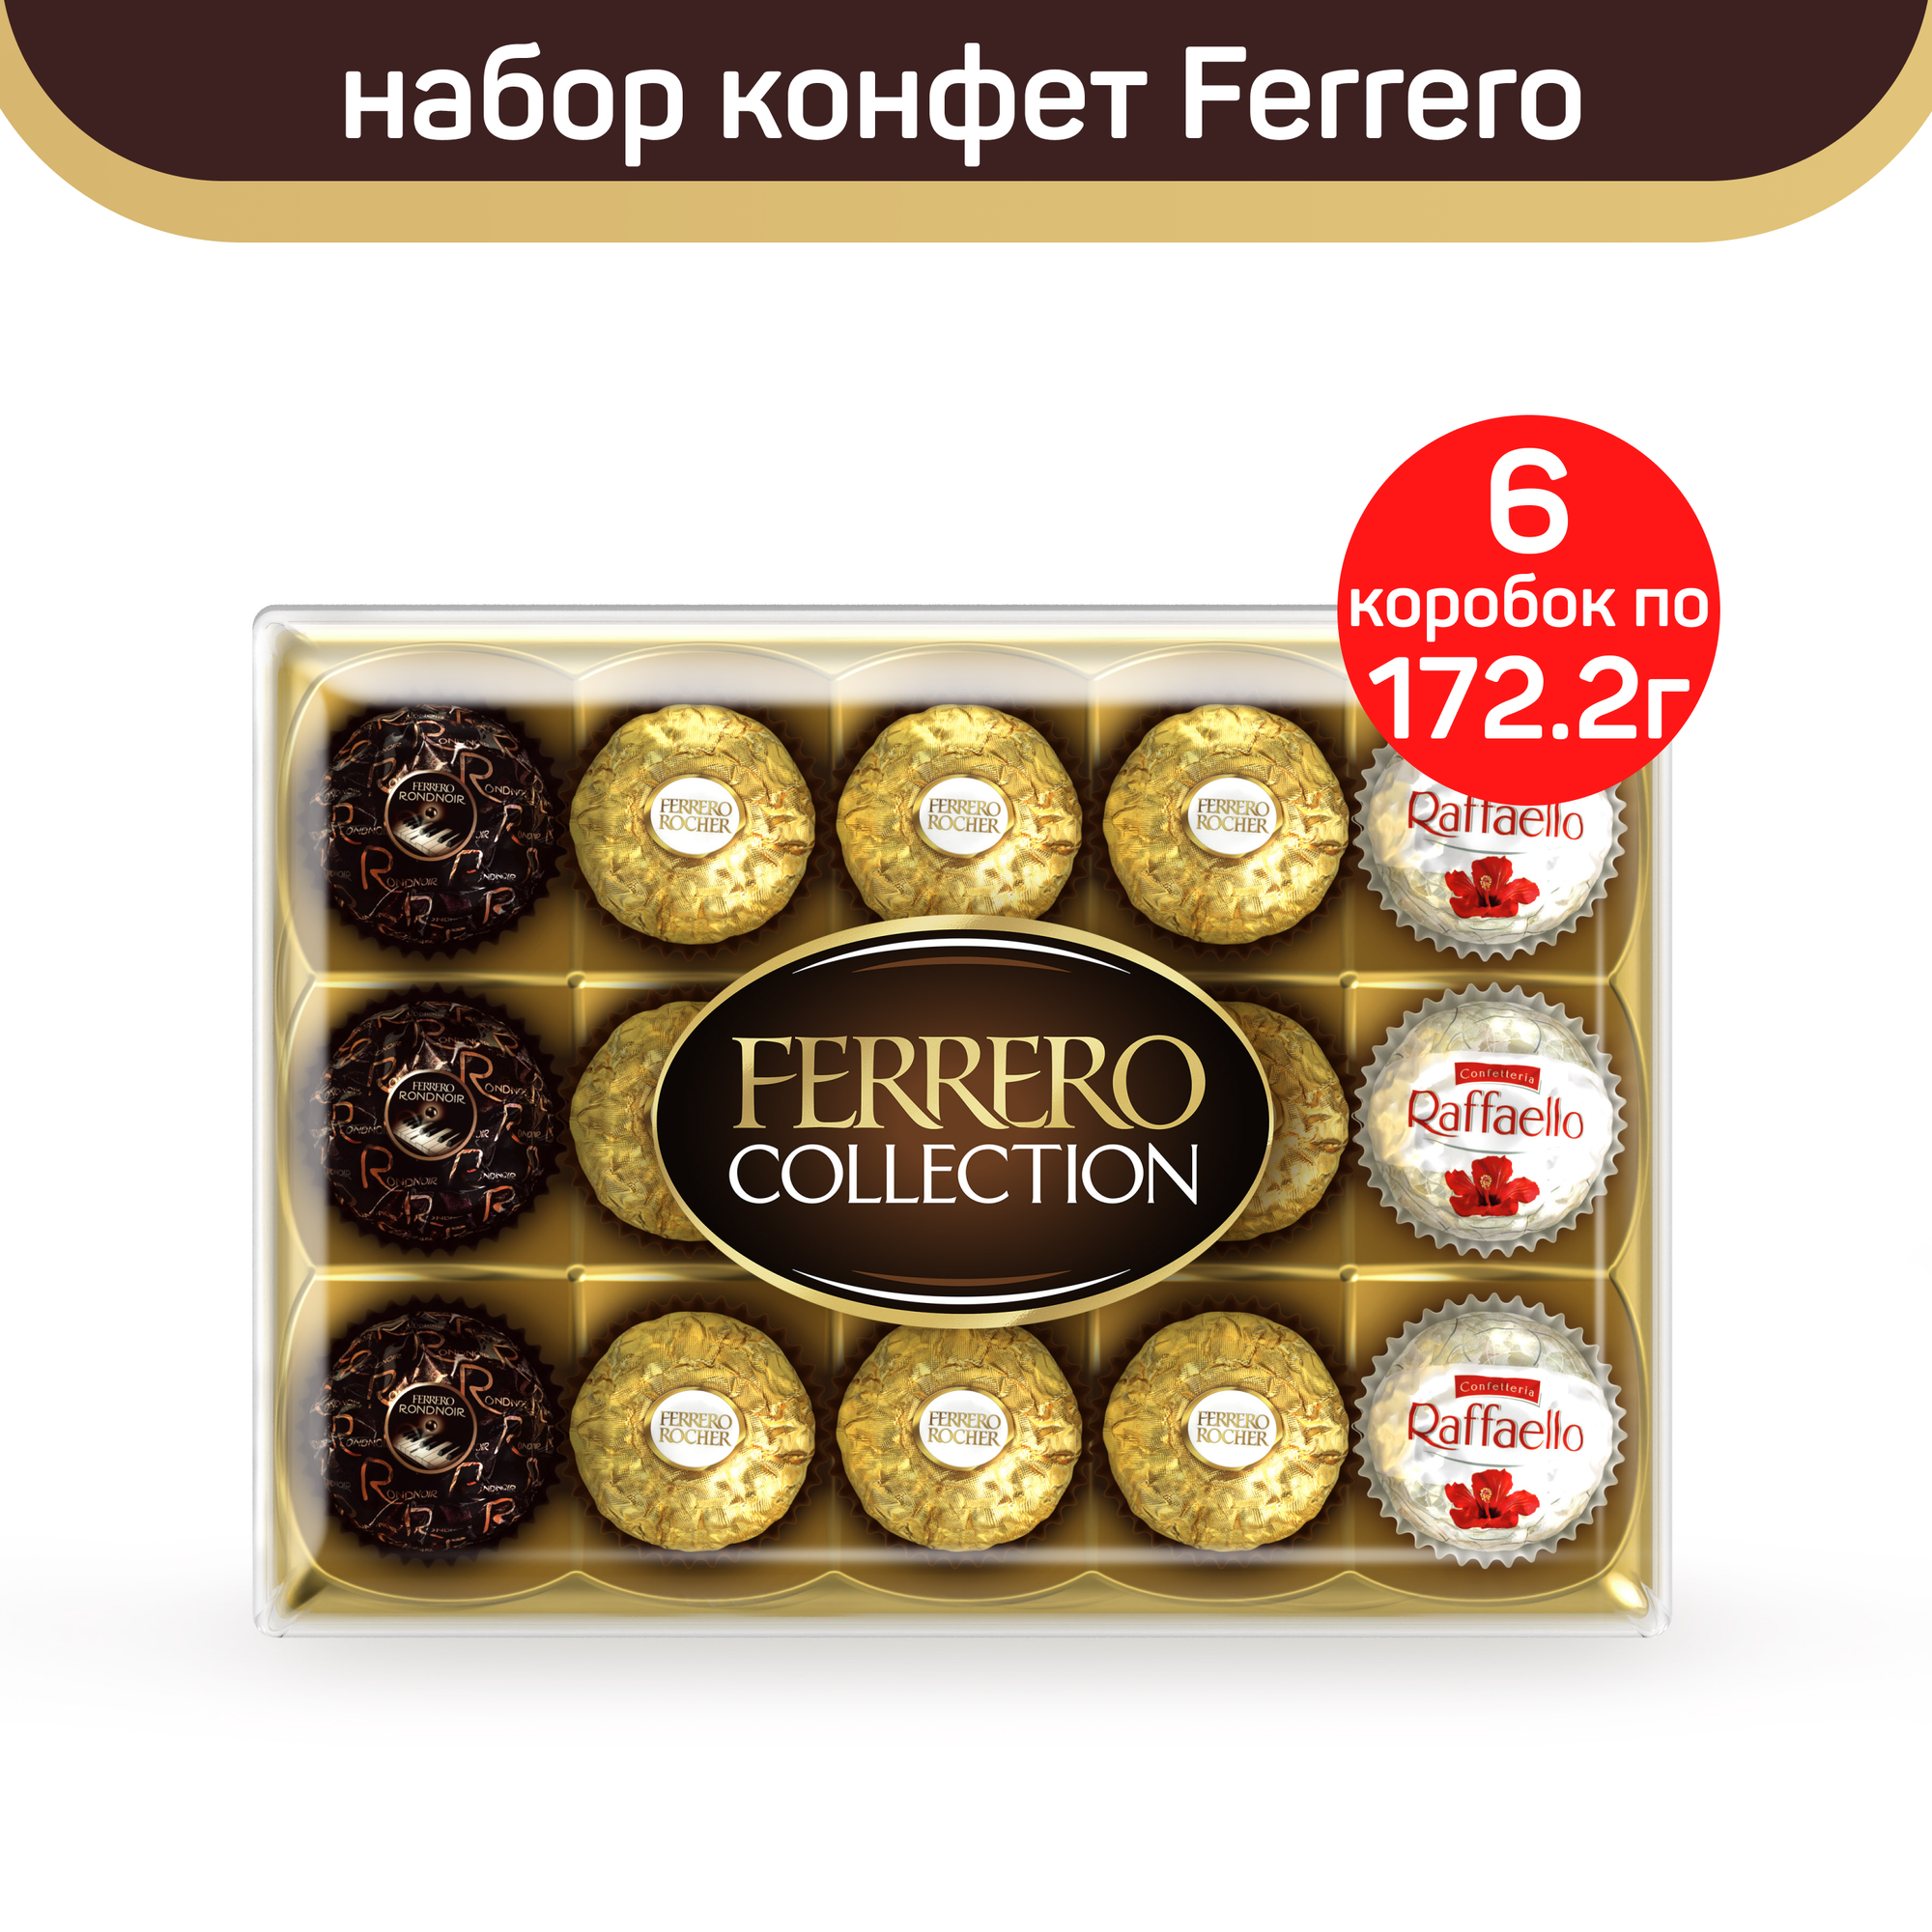 Набор конфет Ferrero Collection, 6 шт по 172,2 г